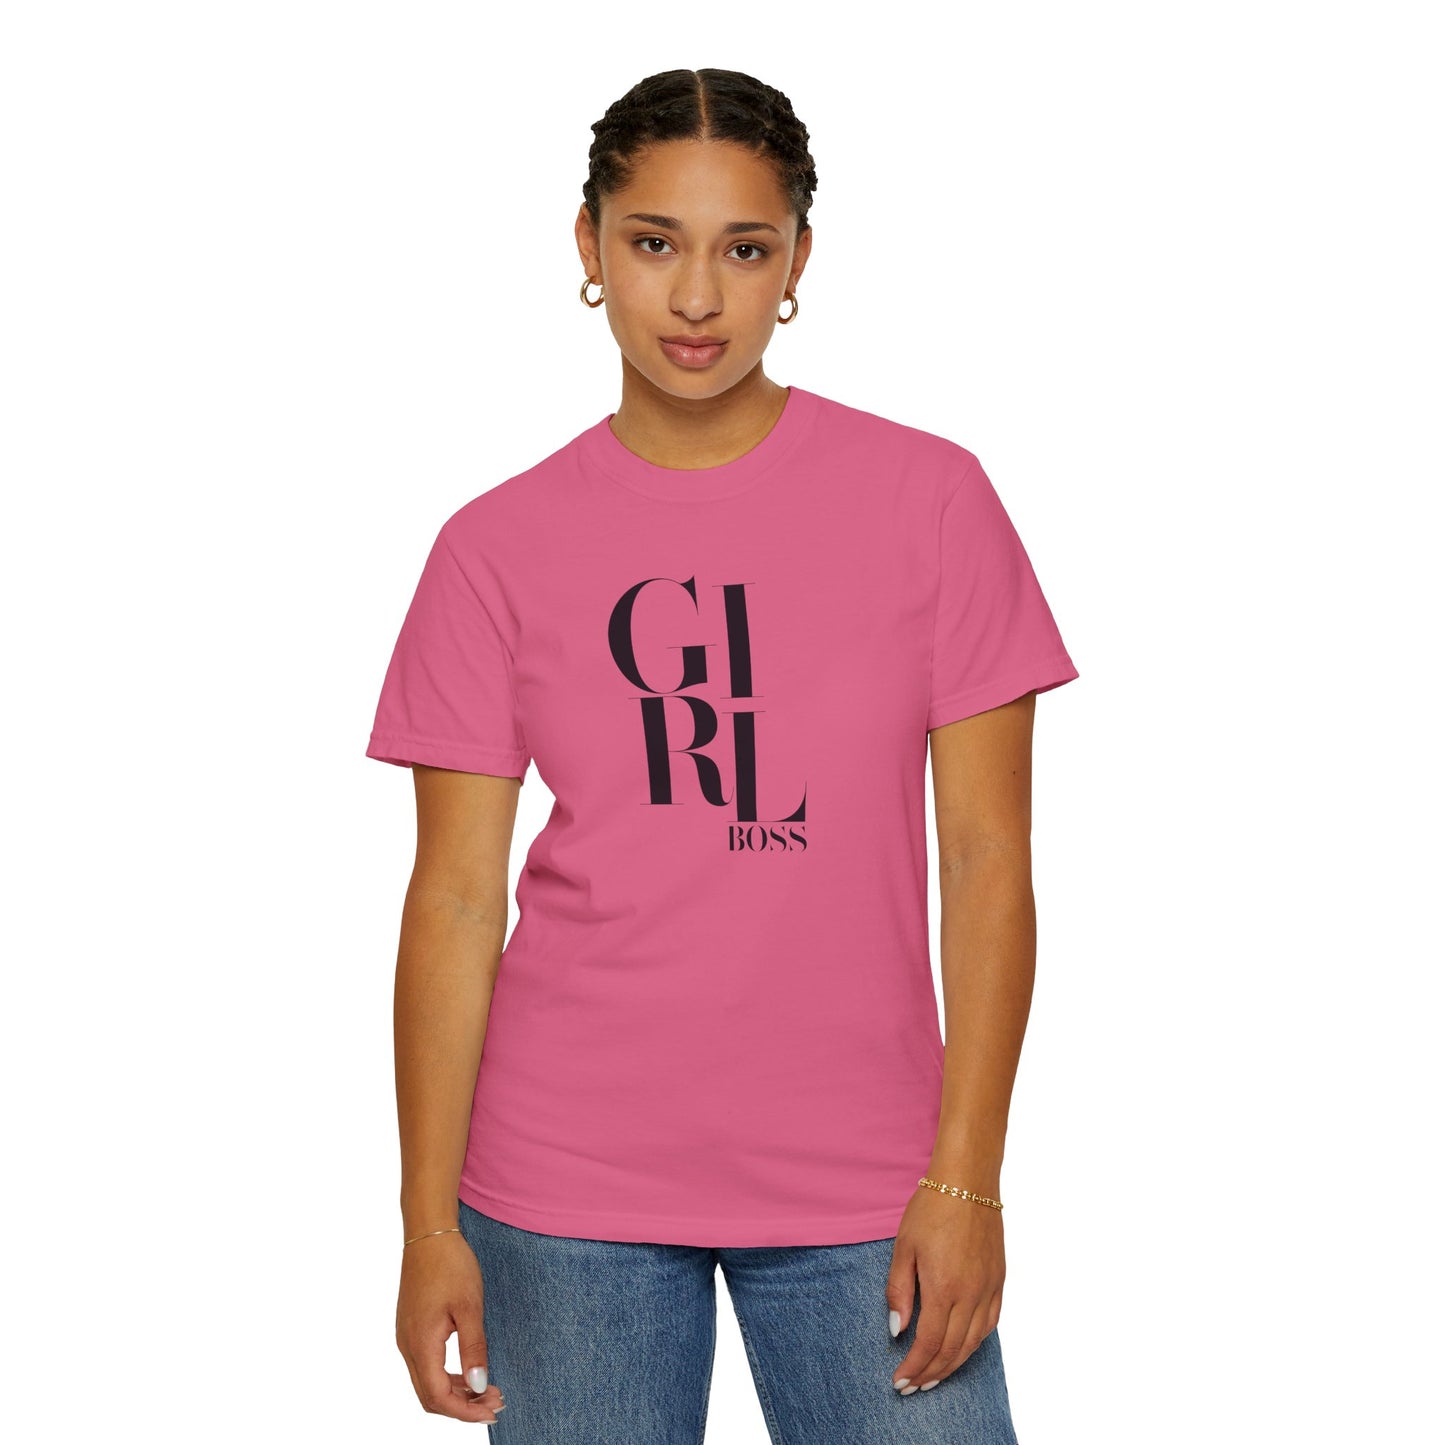 Inspirational Apparel (Girl Boss/ Unisex Garment-Dyed T-shirt)